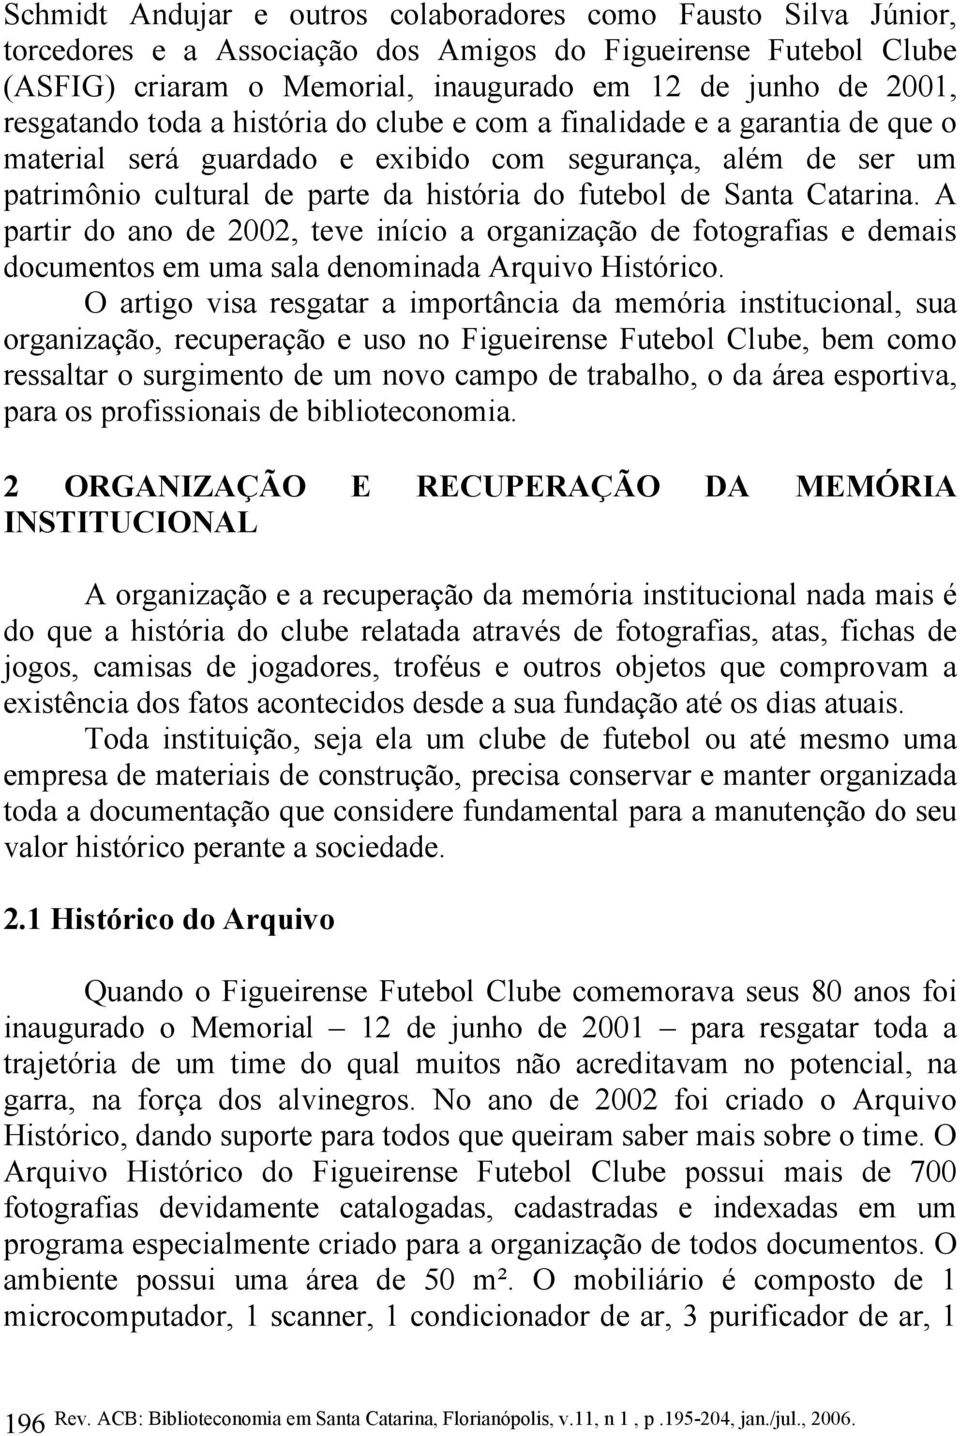 Santa Catarina. A partir do ano de 2002, teve início a organização de fotografias e demais documentos em uma sala denominada Arquivo Histórico.